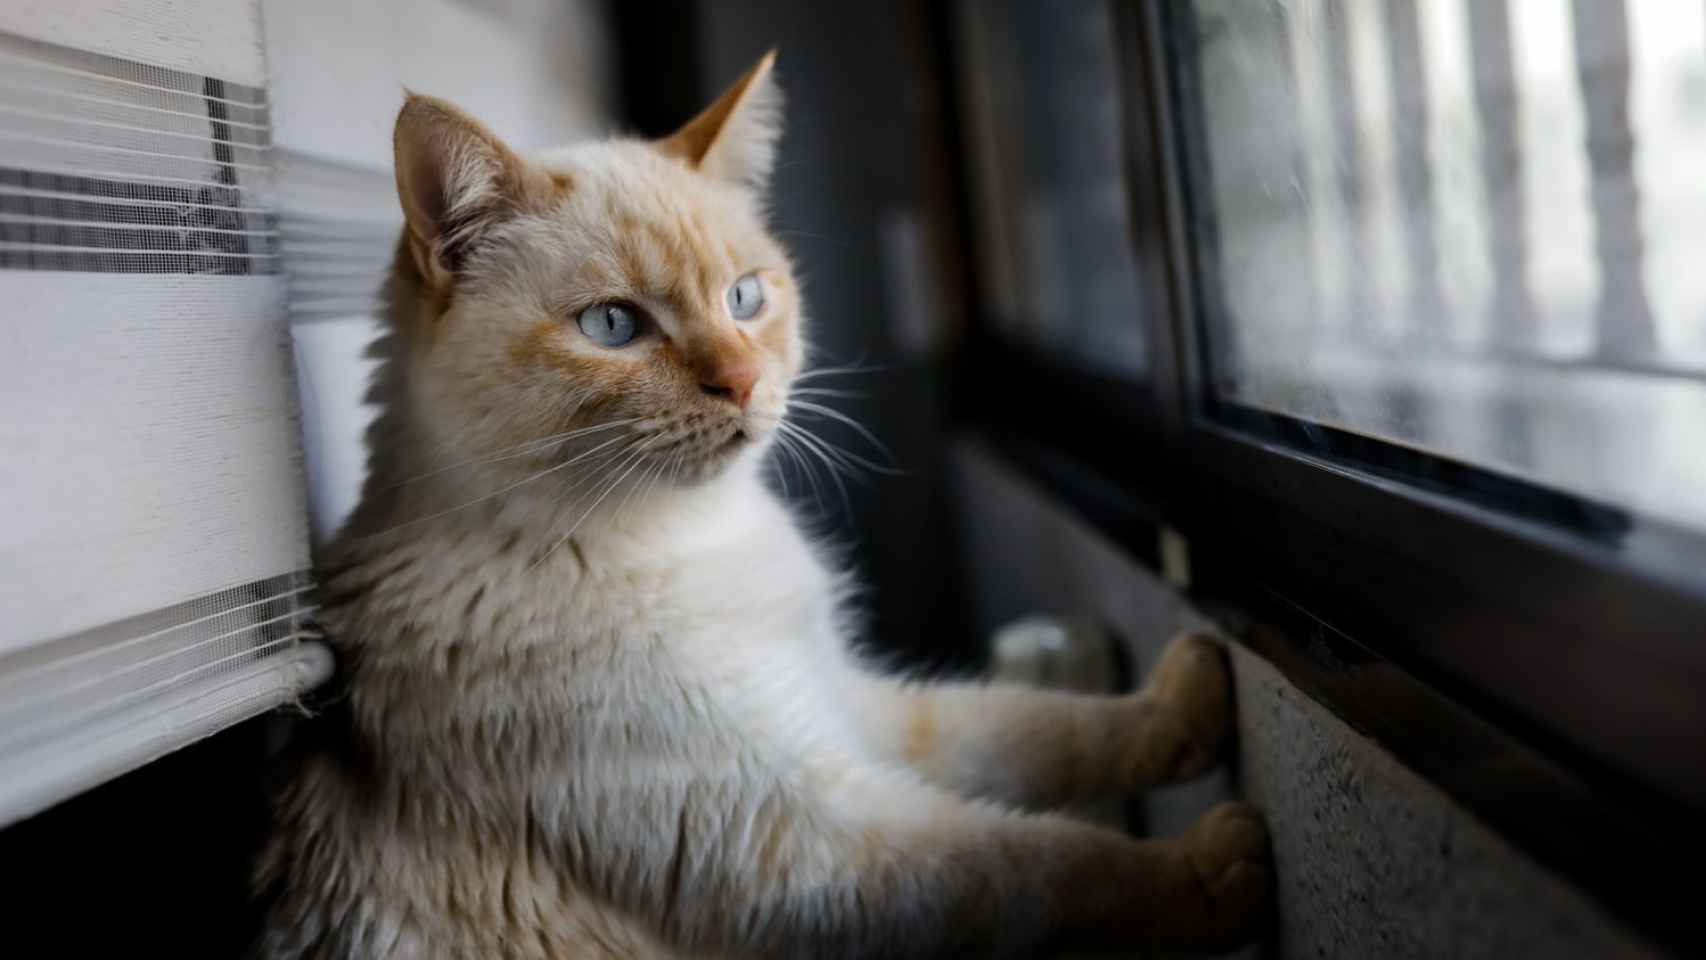 Un gato mira por la ventana en una imagen de archivo / EUROPA PRESS